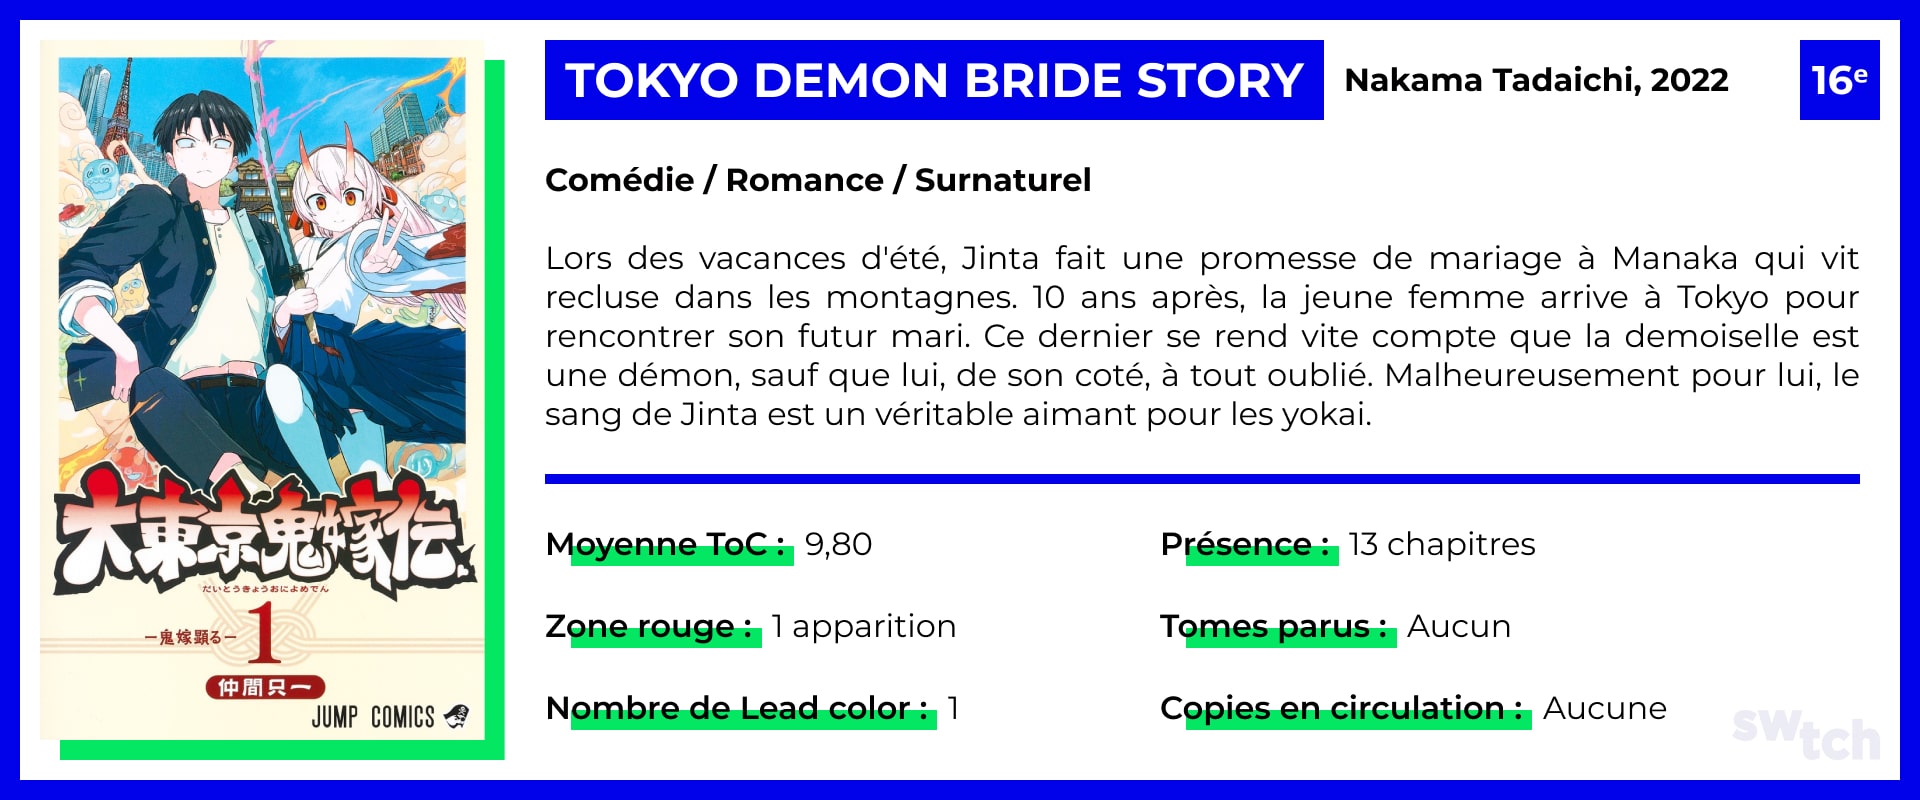 Tokyo Demon Bride Story